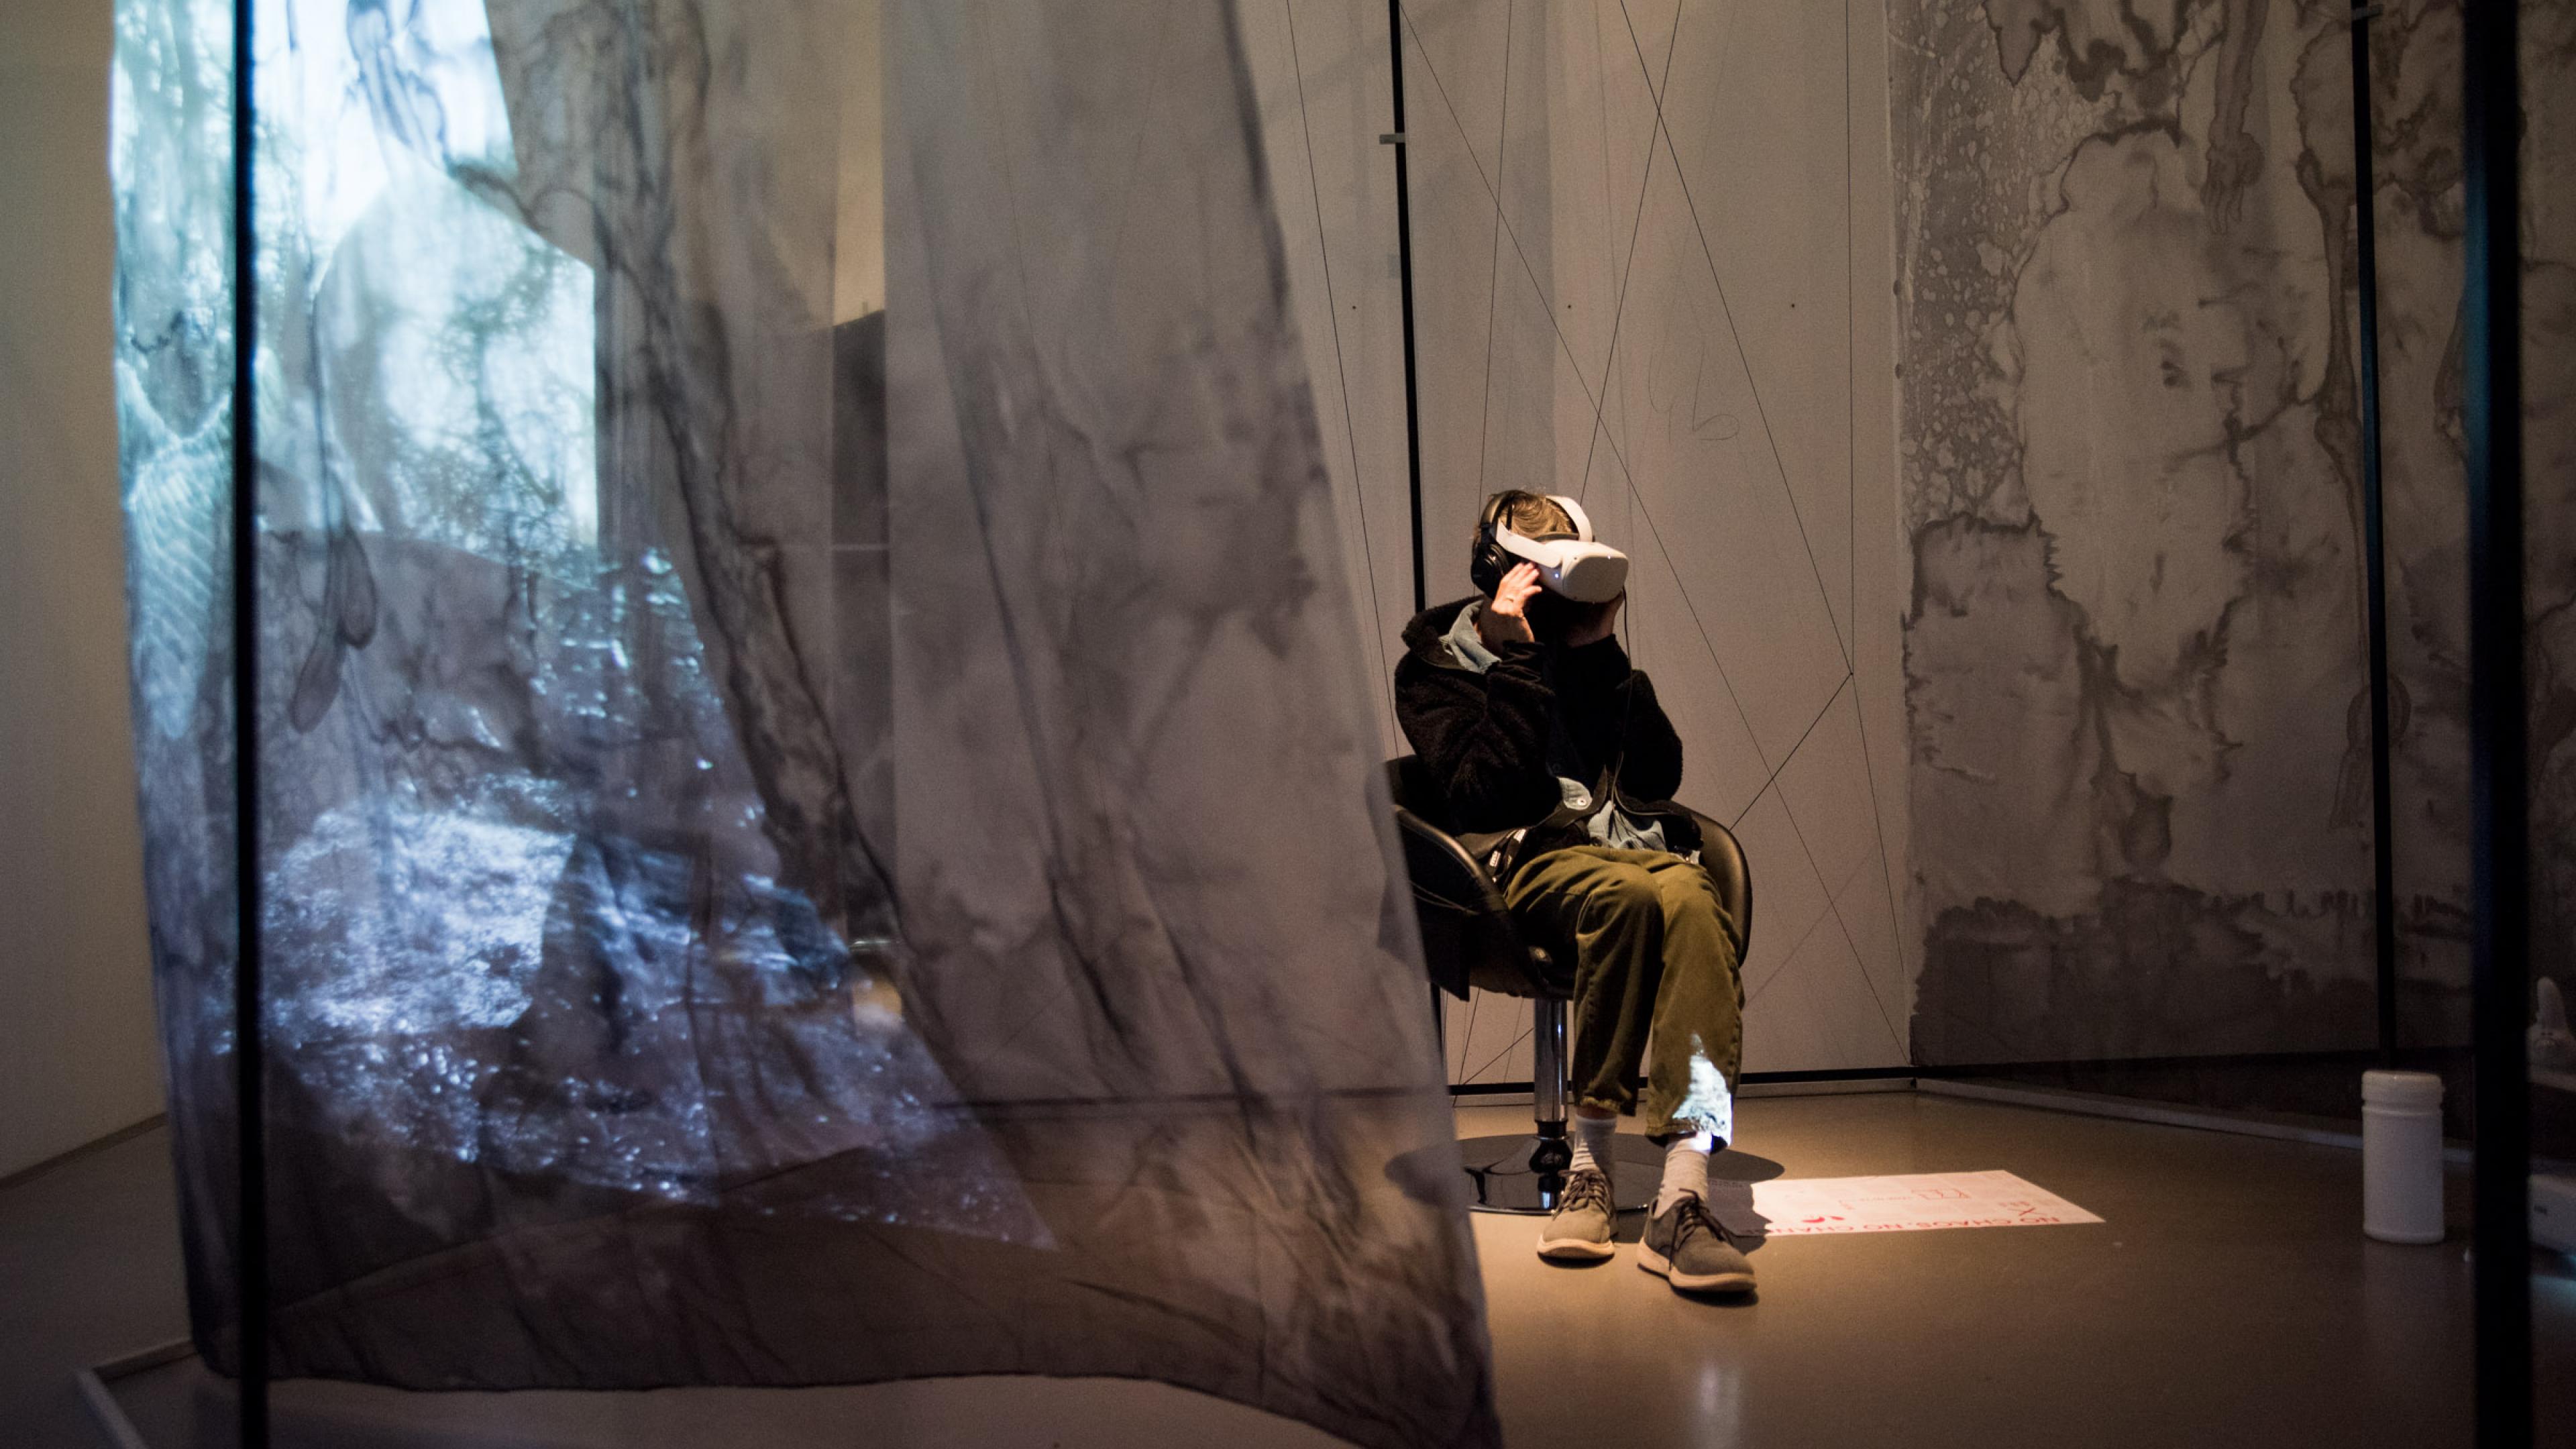 Ein Besucher von DOK Neuland trägt VR-Brille und große Kopfhörer. Er sitzt in einem Ledersessel, um ihn herum hängen halb-transparente graue Stoffbahnen von der Decke, auf denen eine Lichtprojektion sichtbar ist.